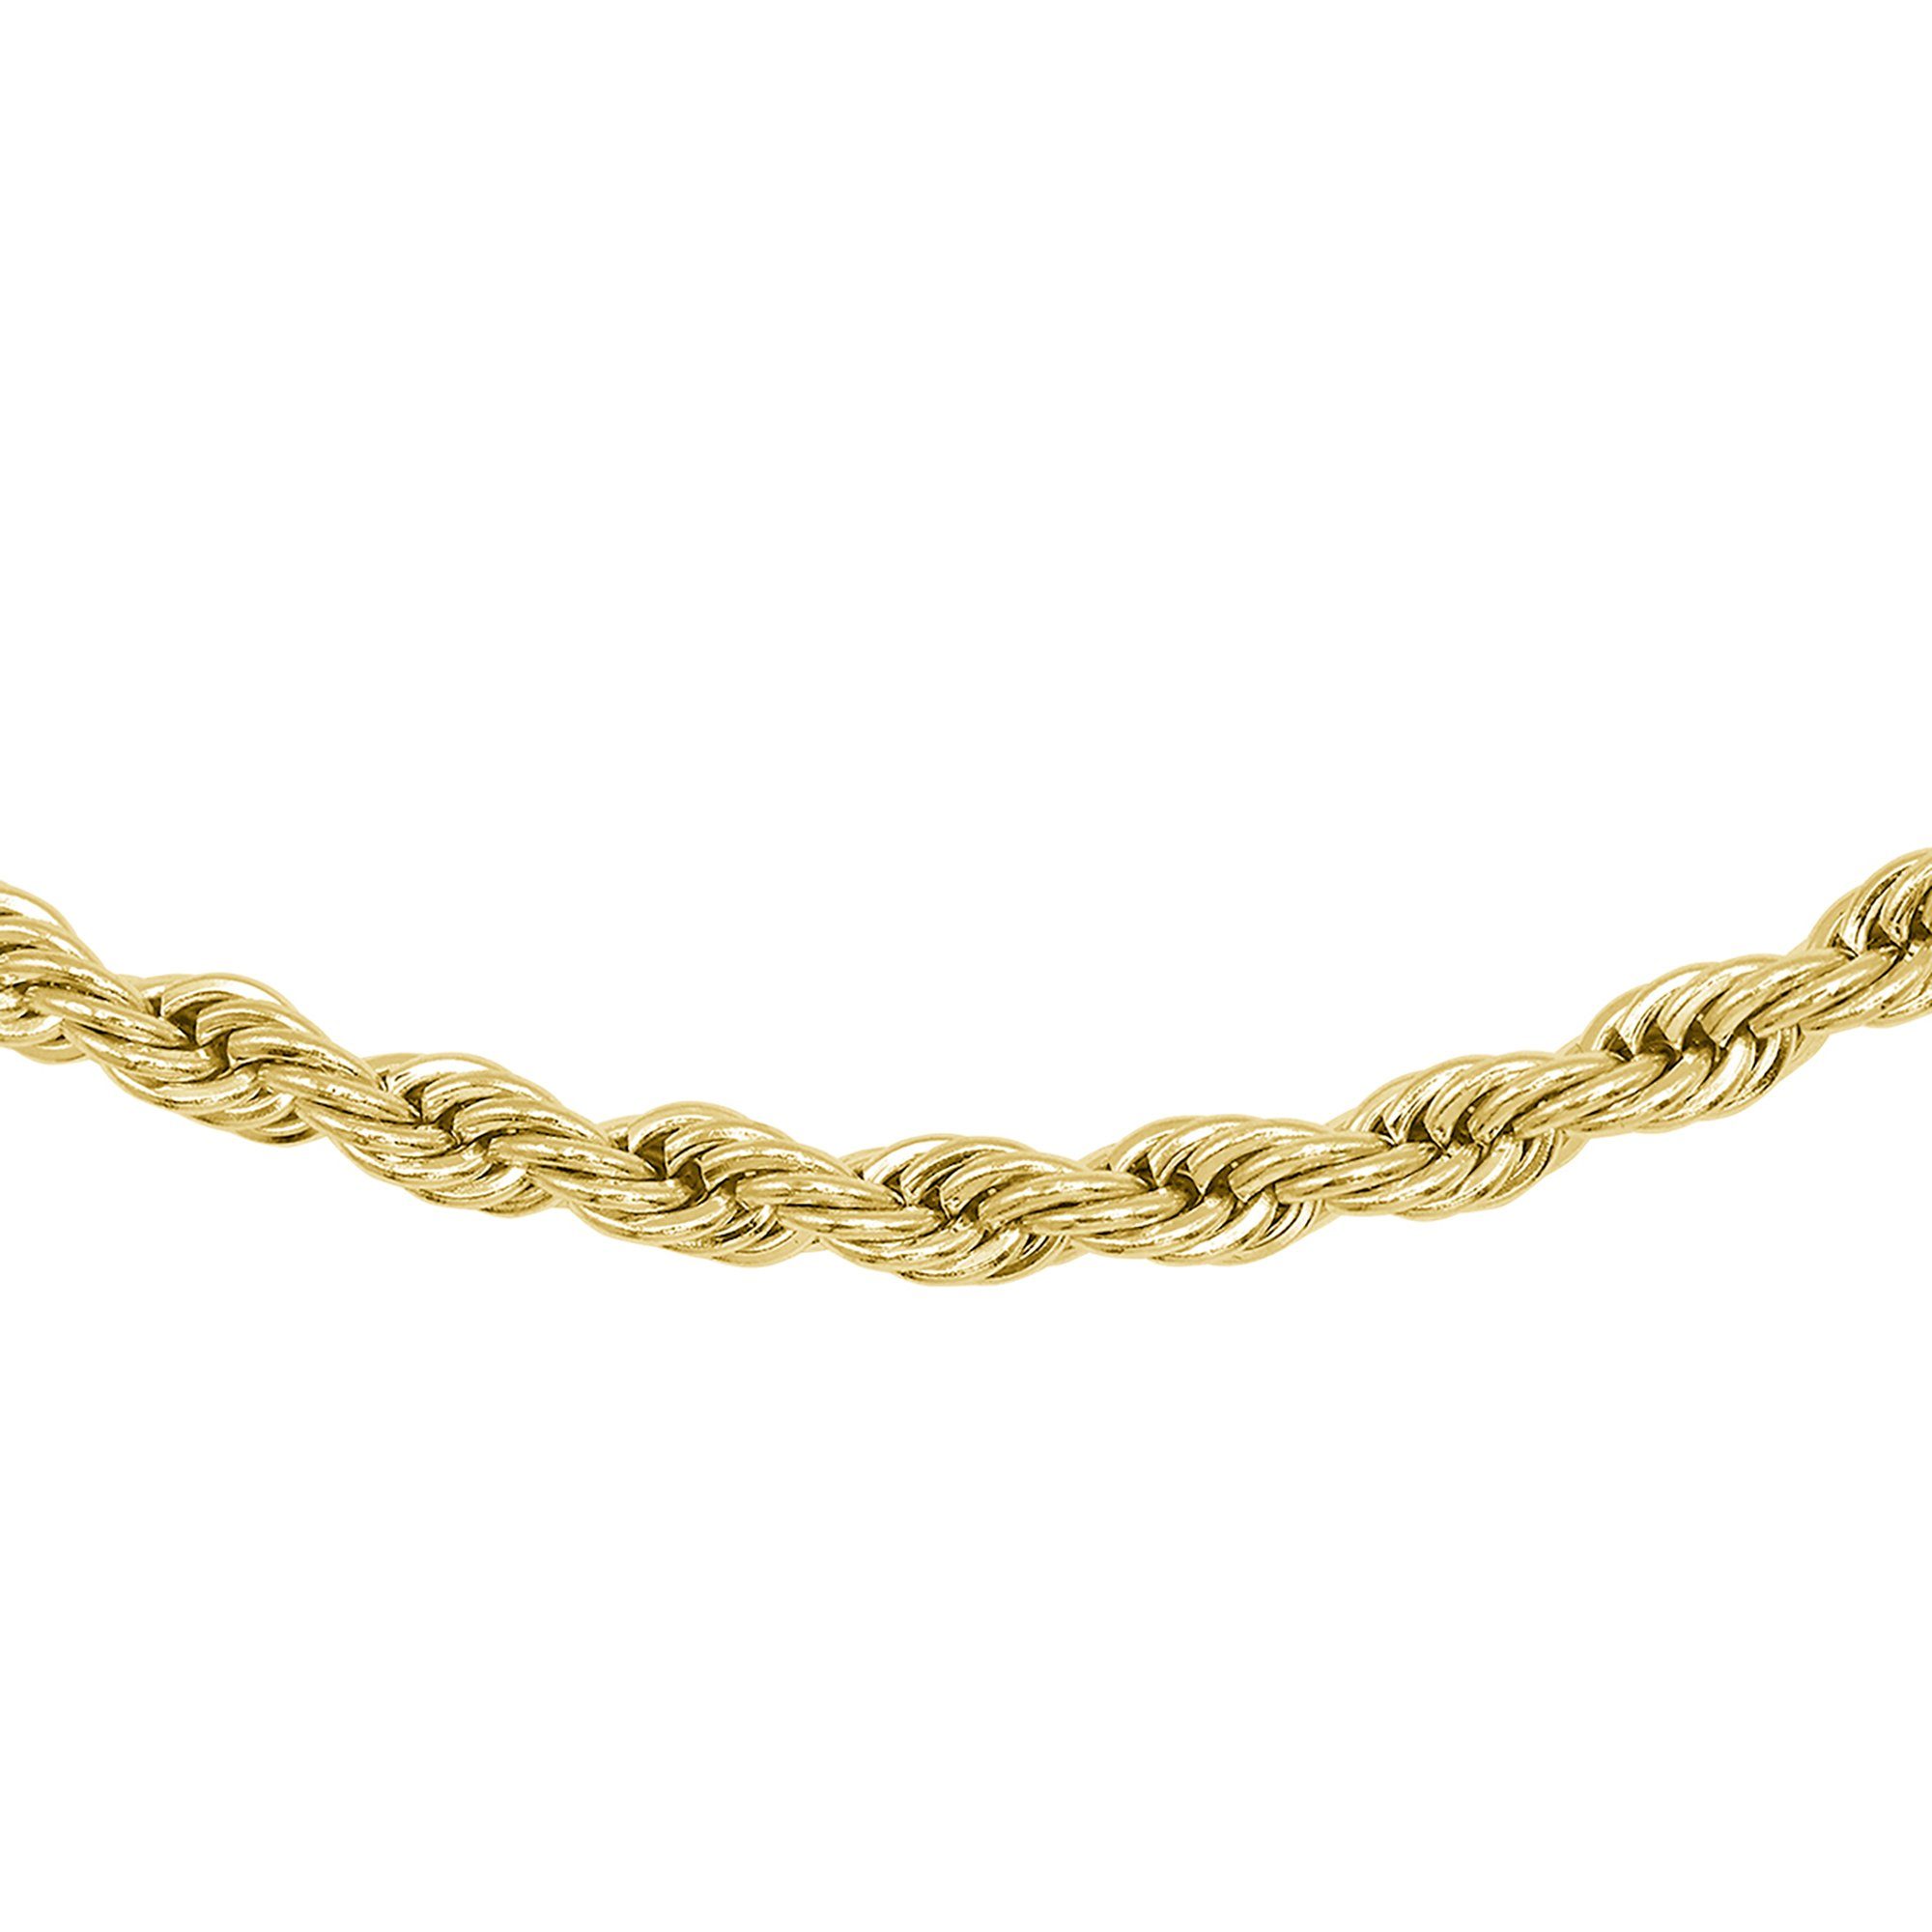 Heideman Collier Theo ohne Halskette (inkl. Geschenkverpackung), Männer Anhänger goldfarben